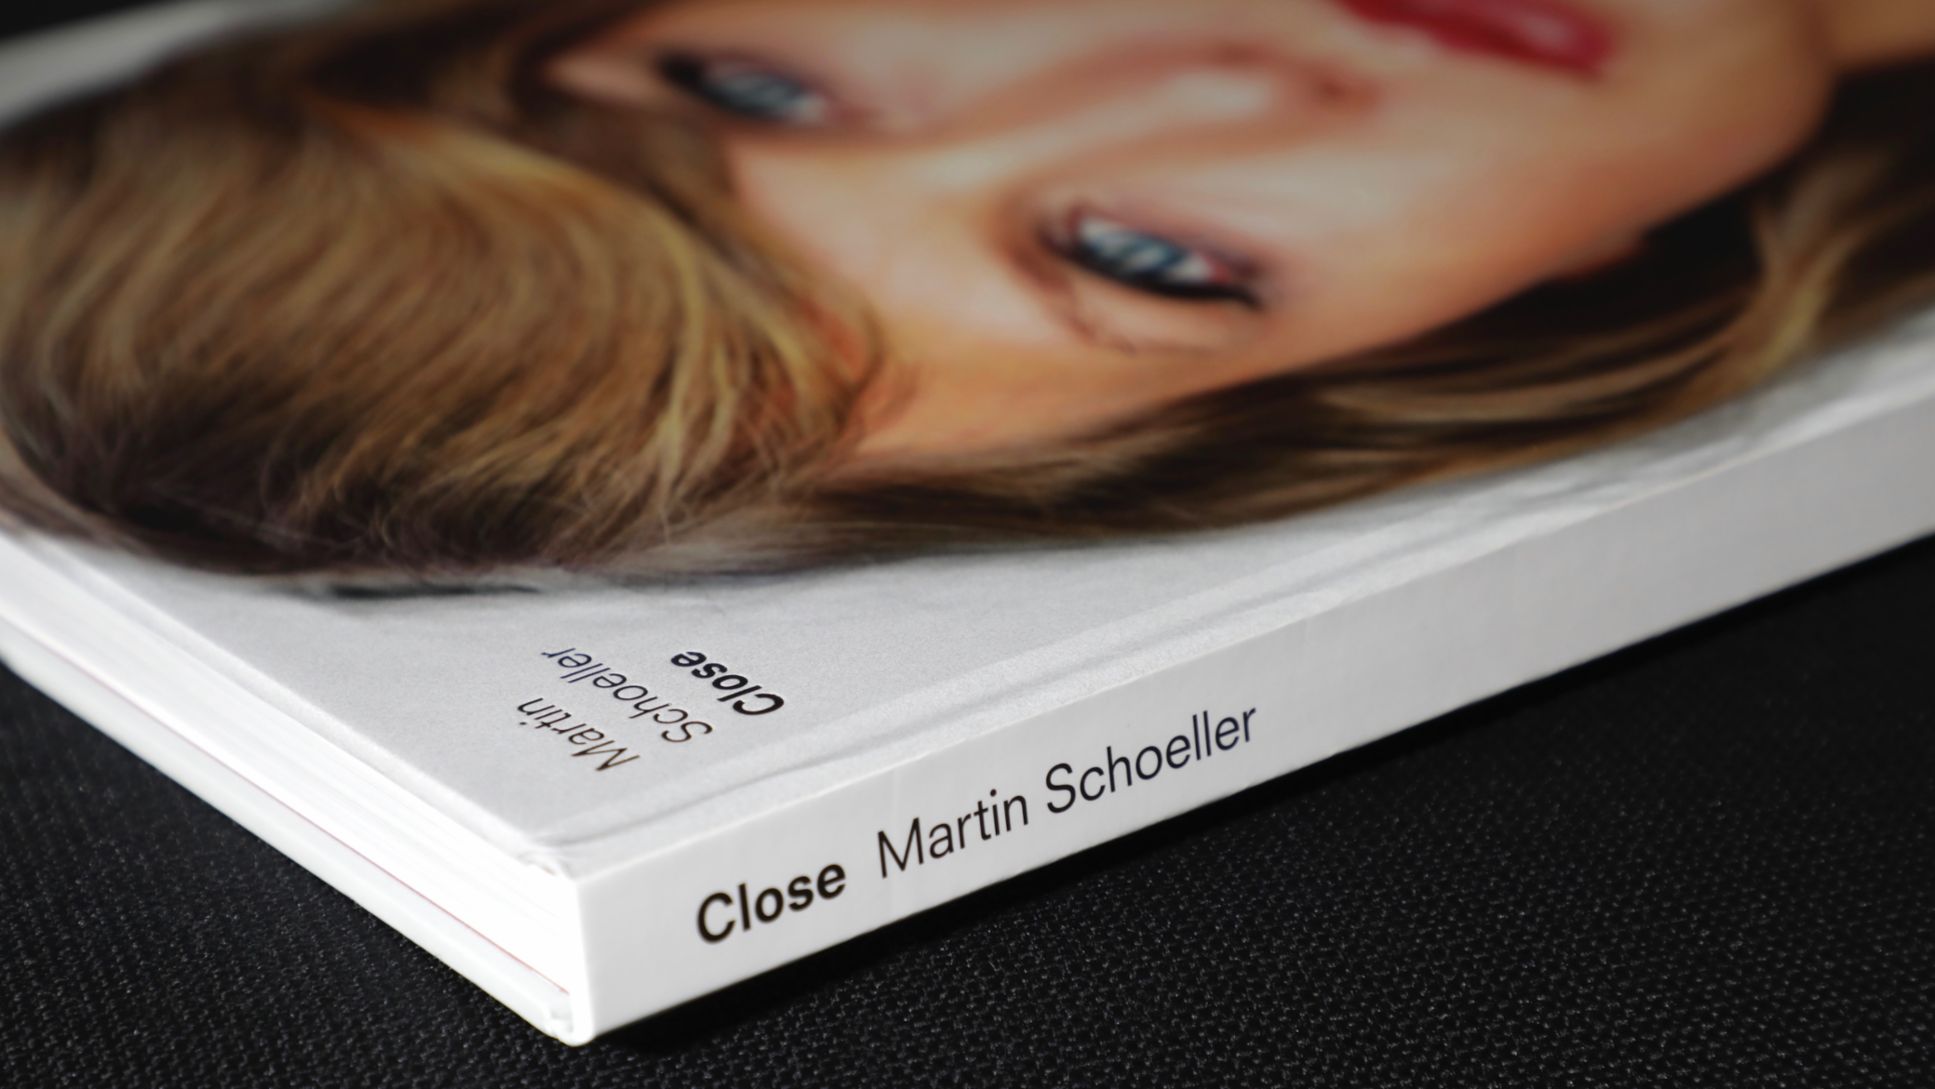 Close, Martin Schoeller, 2018, Porsche AG